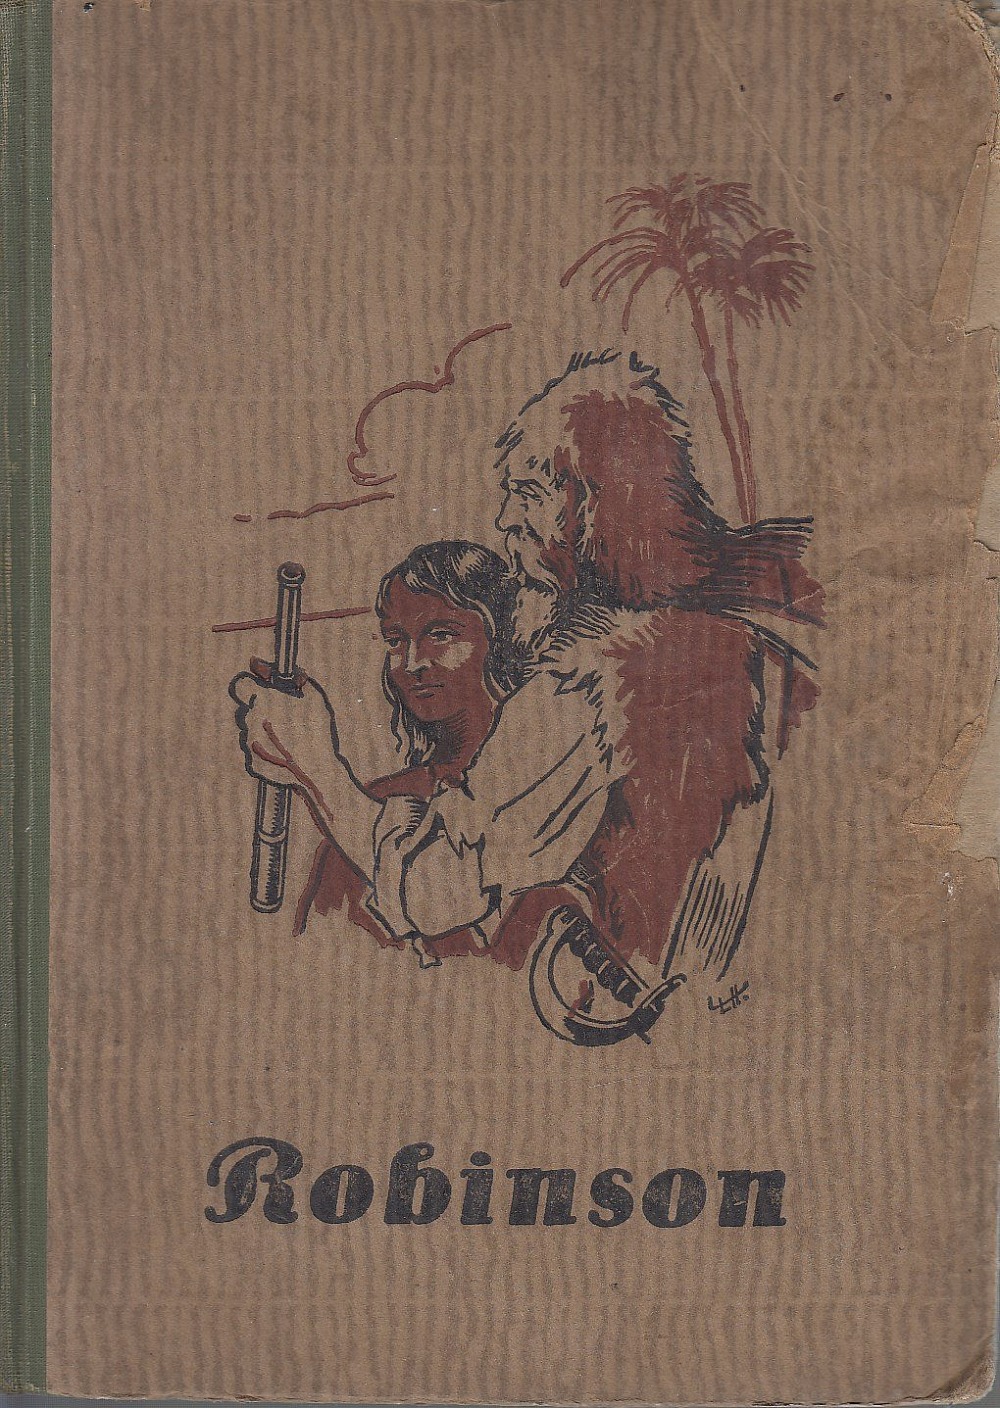 Robinson Crusoe - Jeho osudy, zážitky a dobrodružství